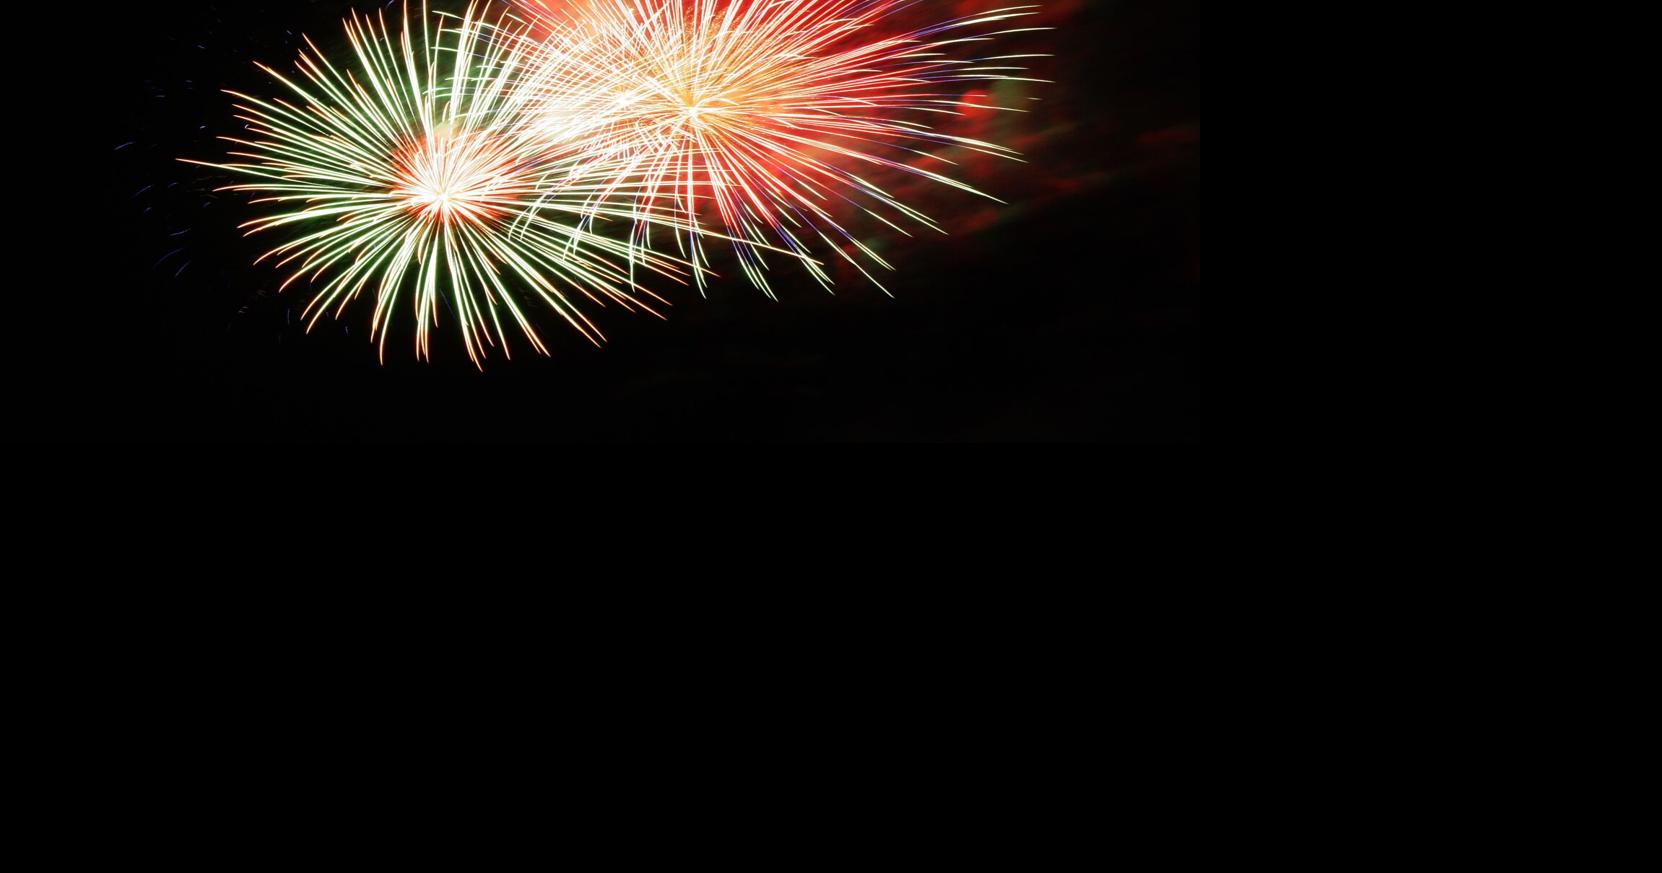 Fireworks will light up Flemington sky on Monday, July 3 Hunterdon